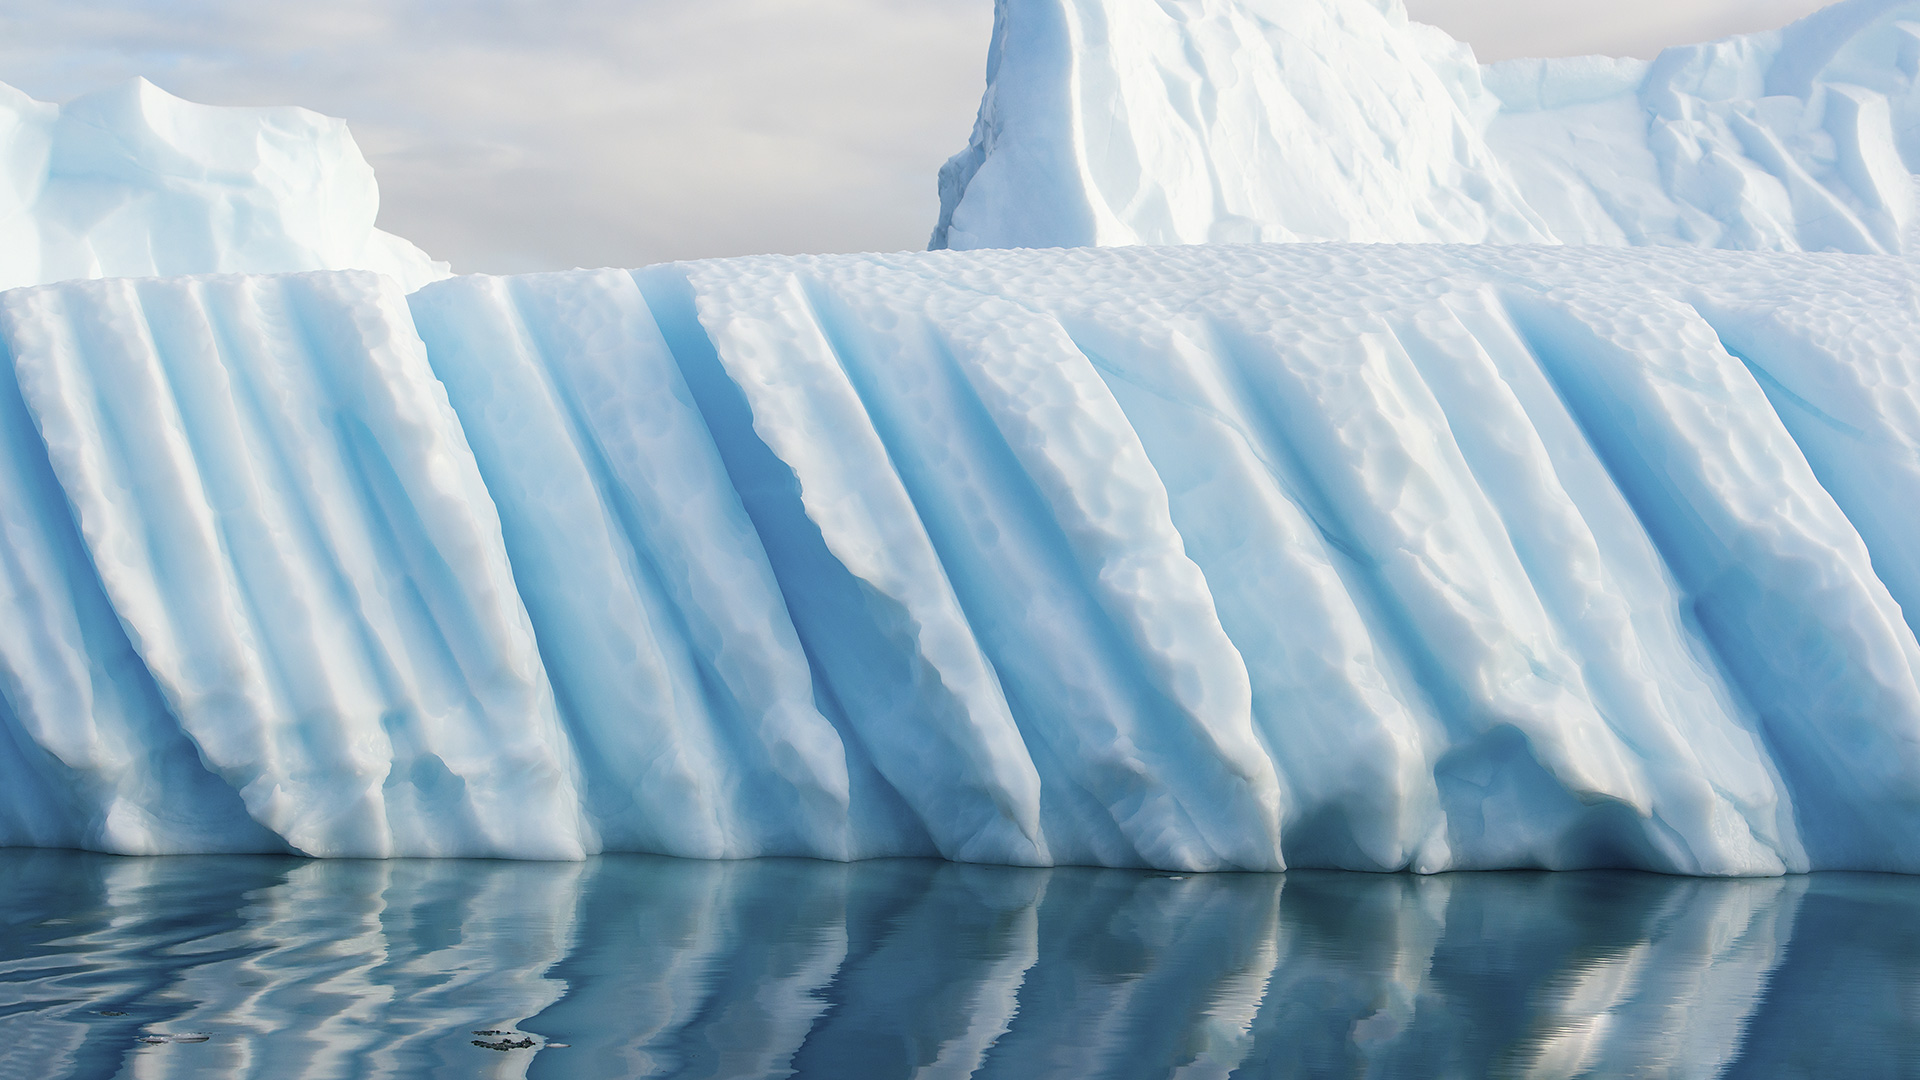 Radartechnik ermöglicht tiefe Einblicke ins Gletschereis